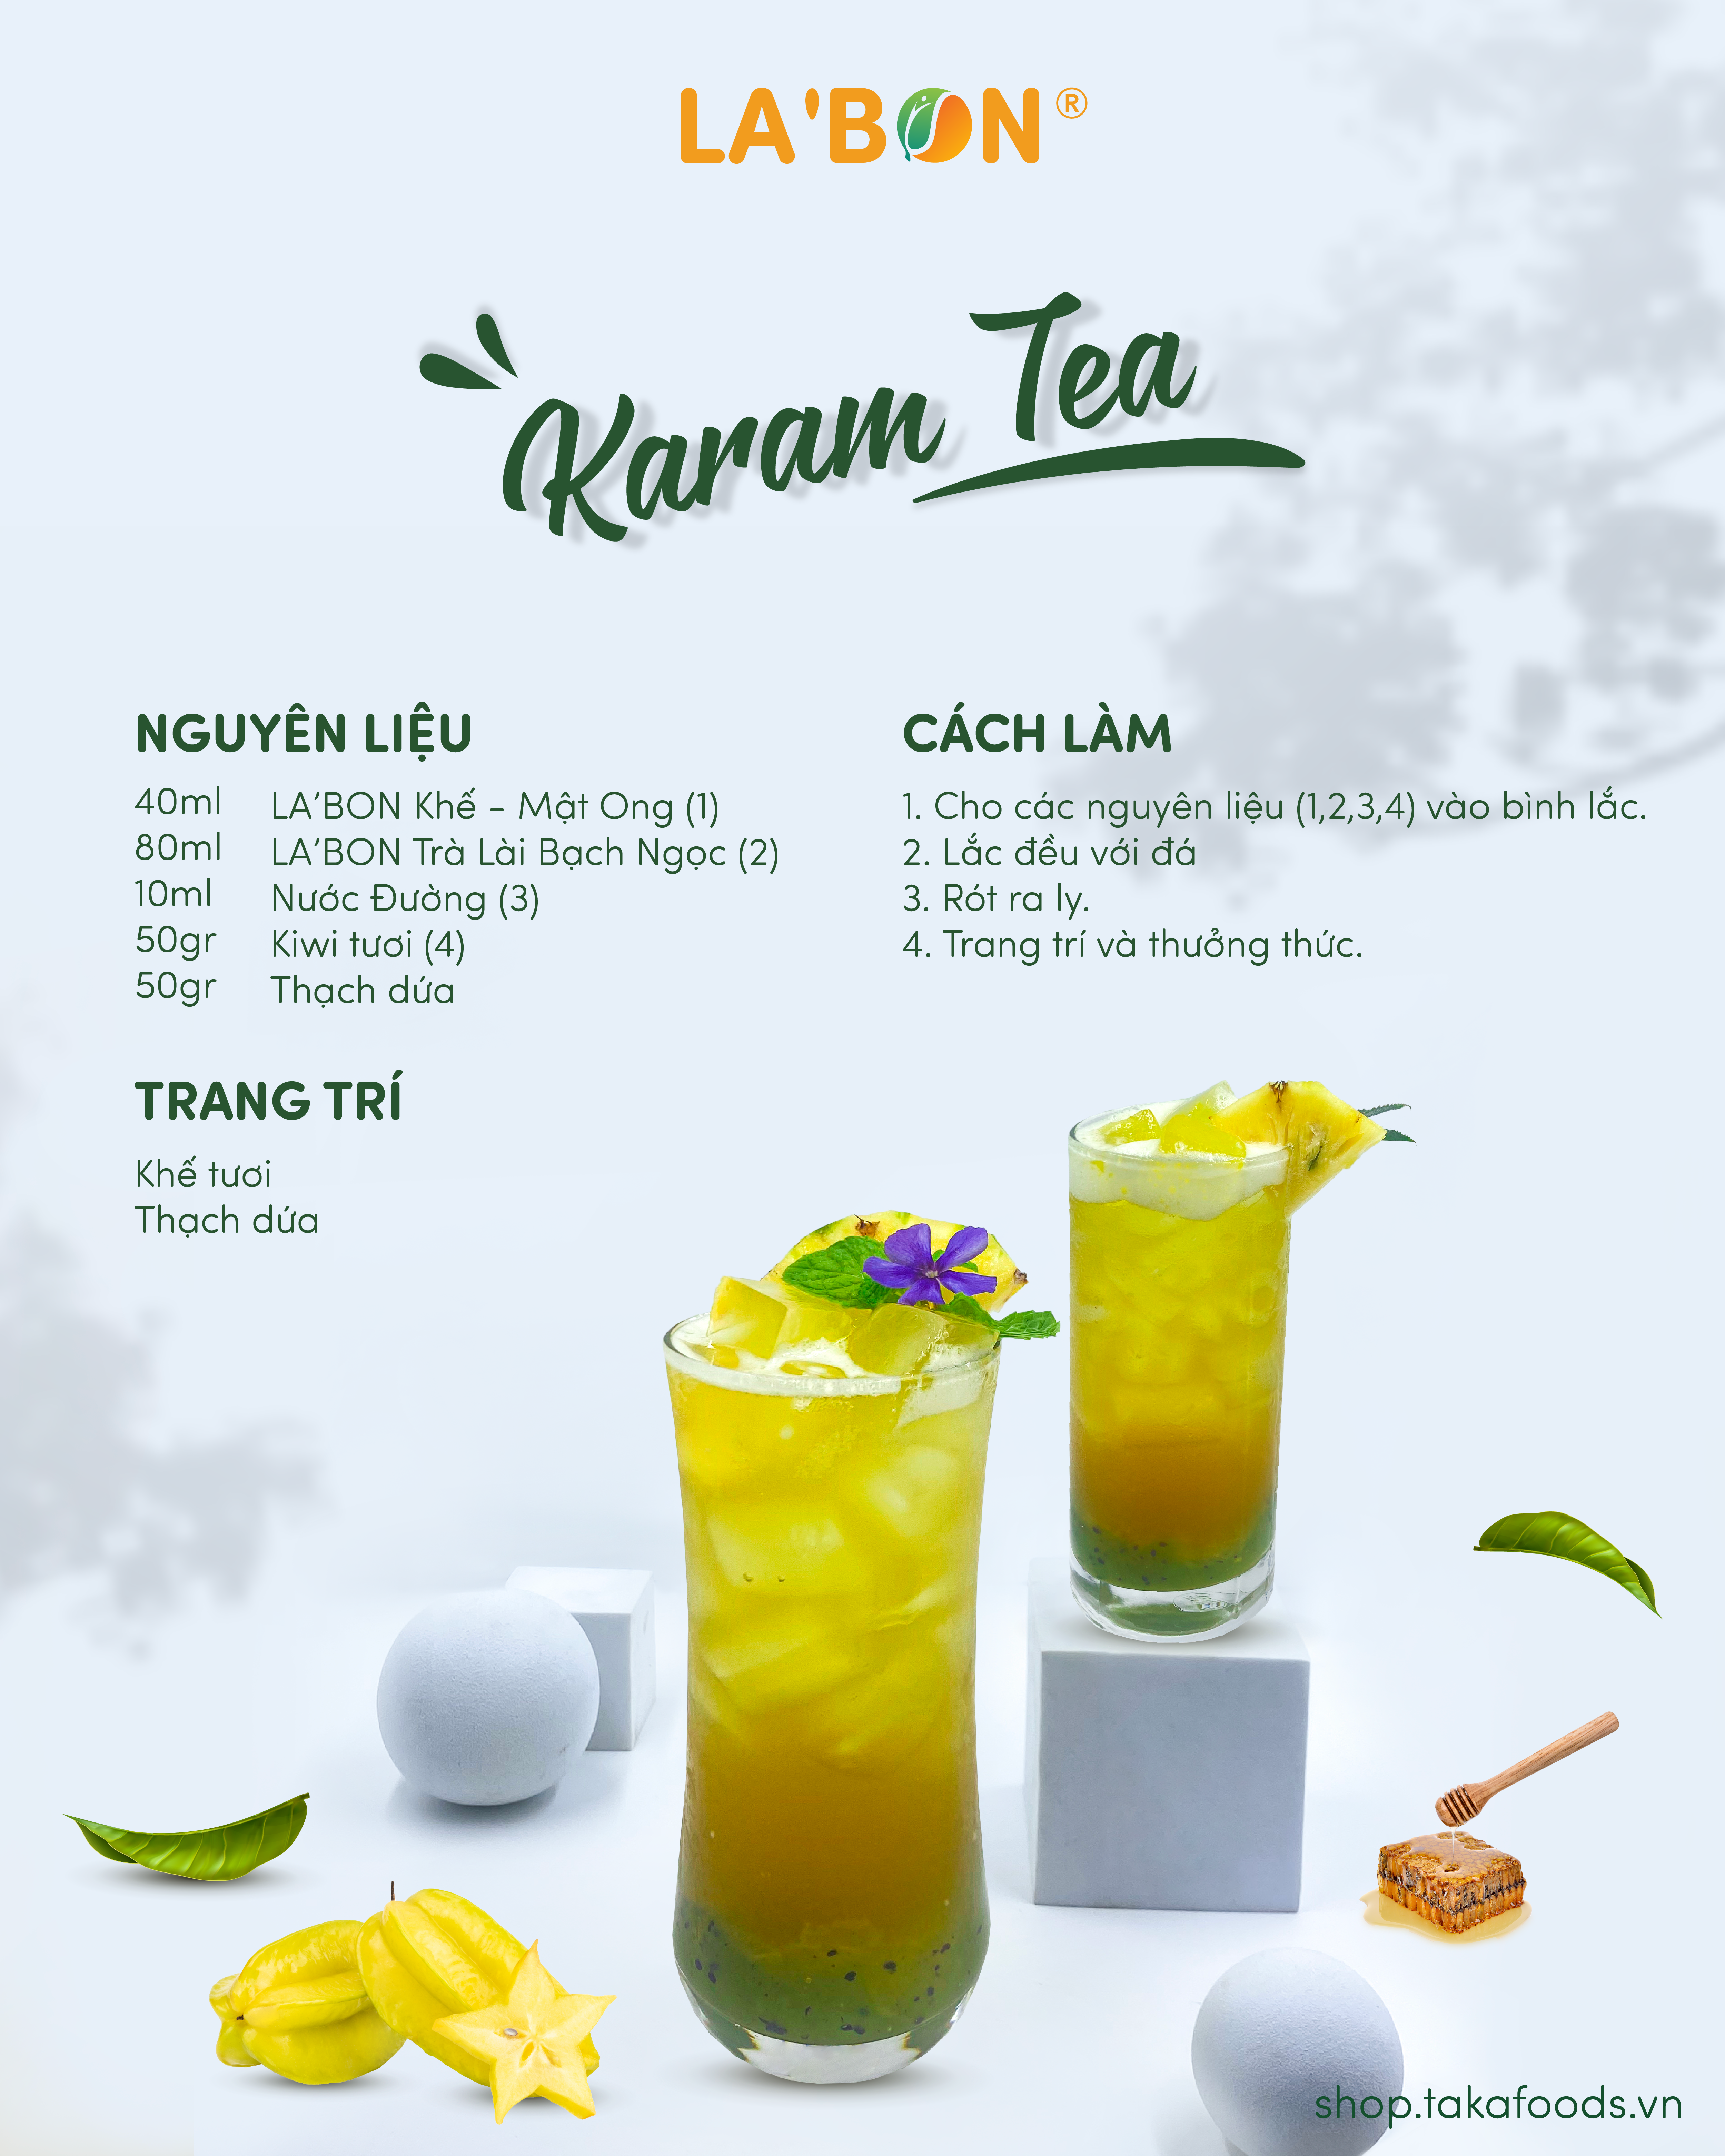 Công thức pha chế Karam Tea